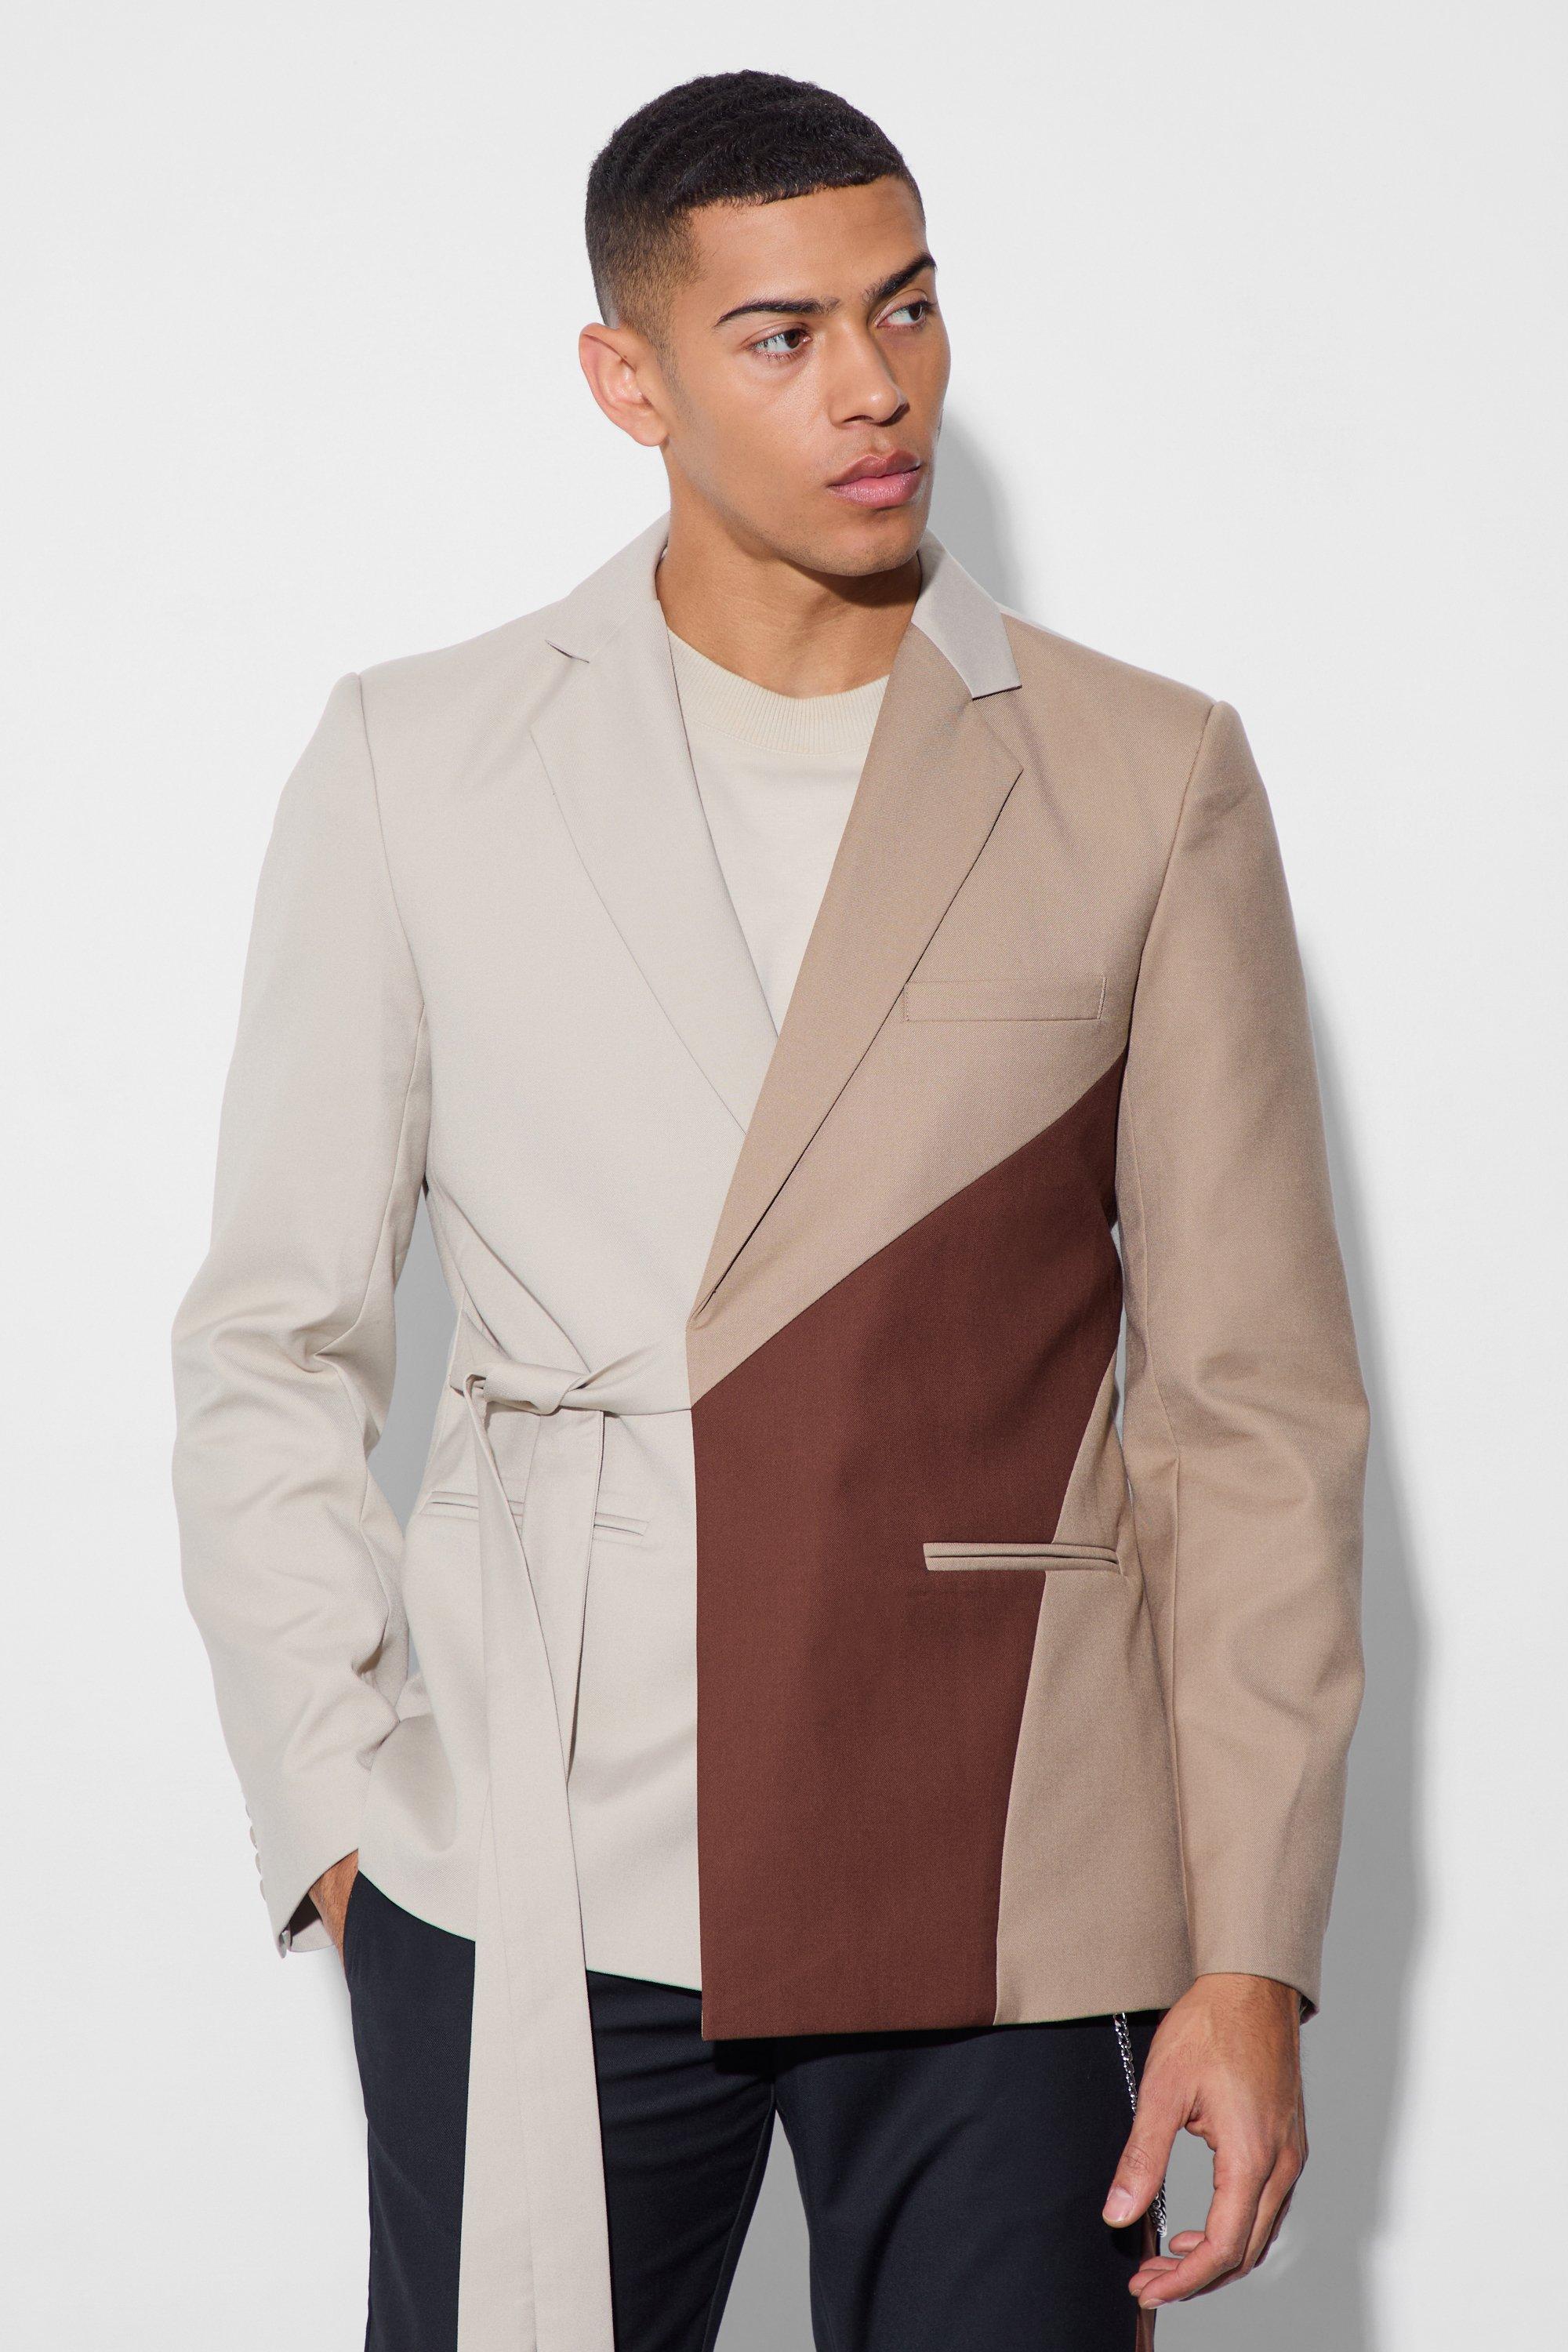 womens slim wrap panel suit jacket - brown - 38, brown